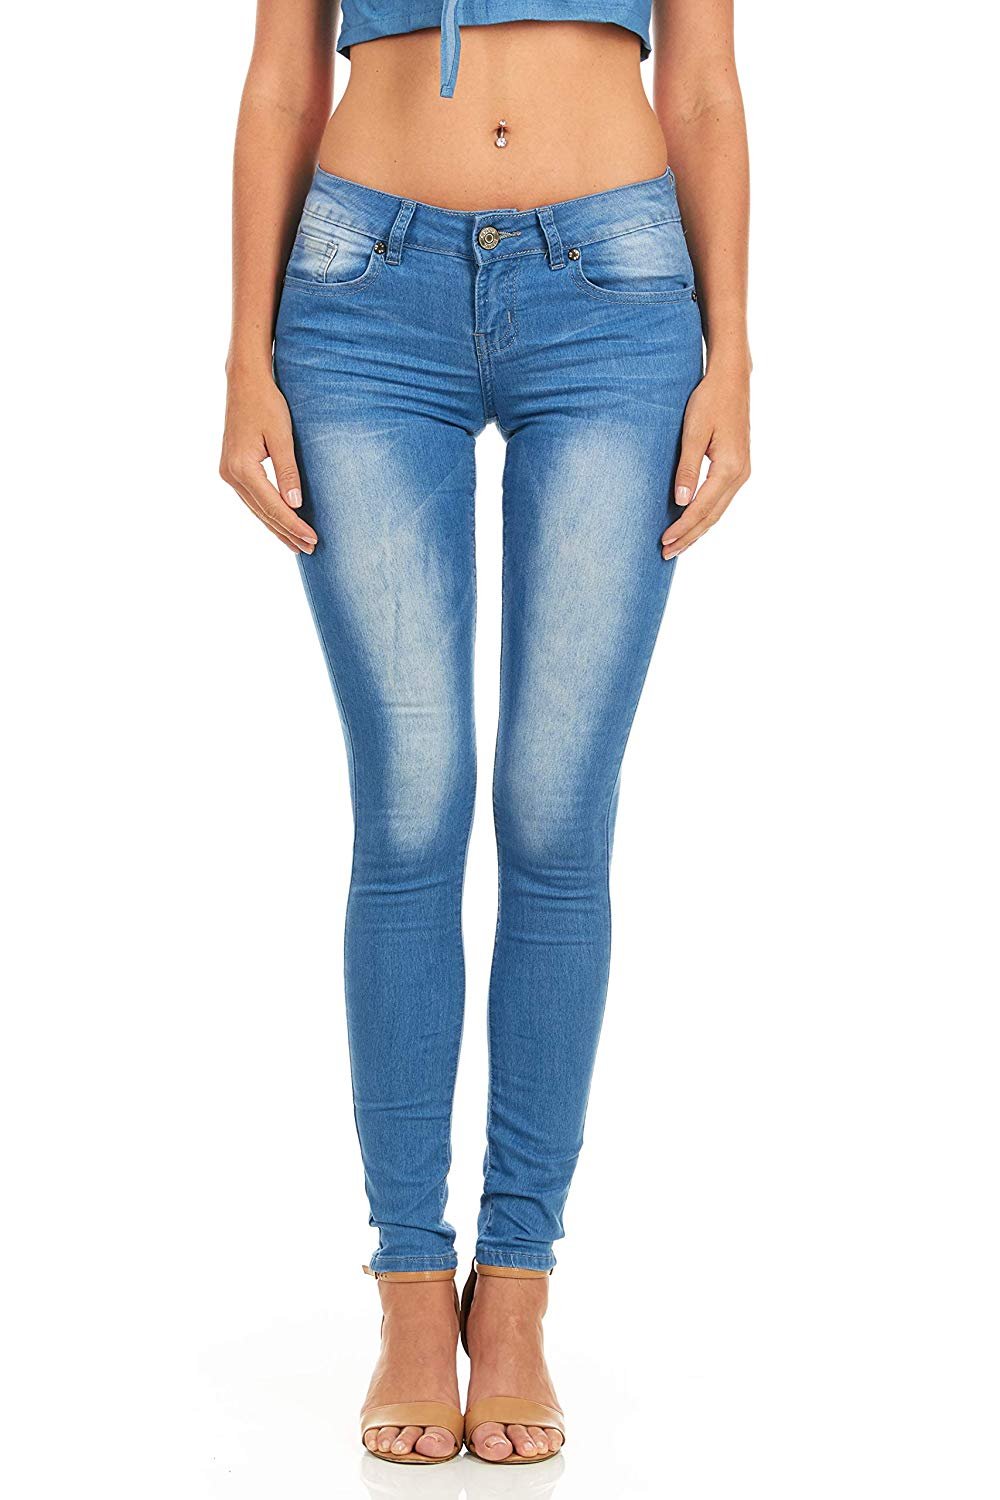 slim girl jeans